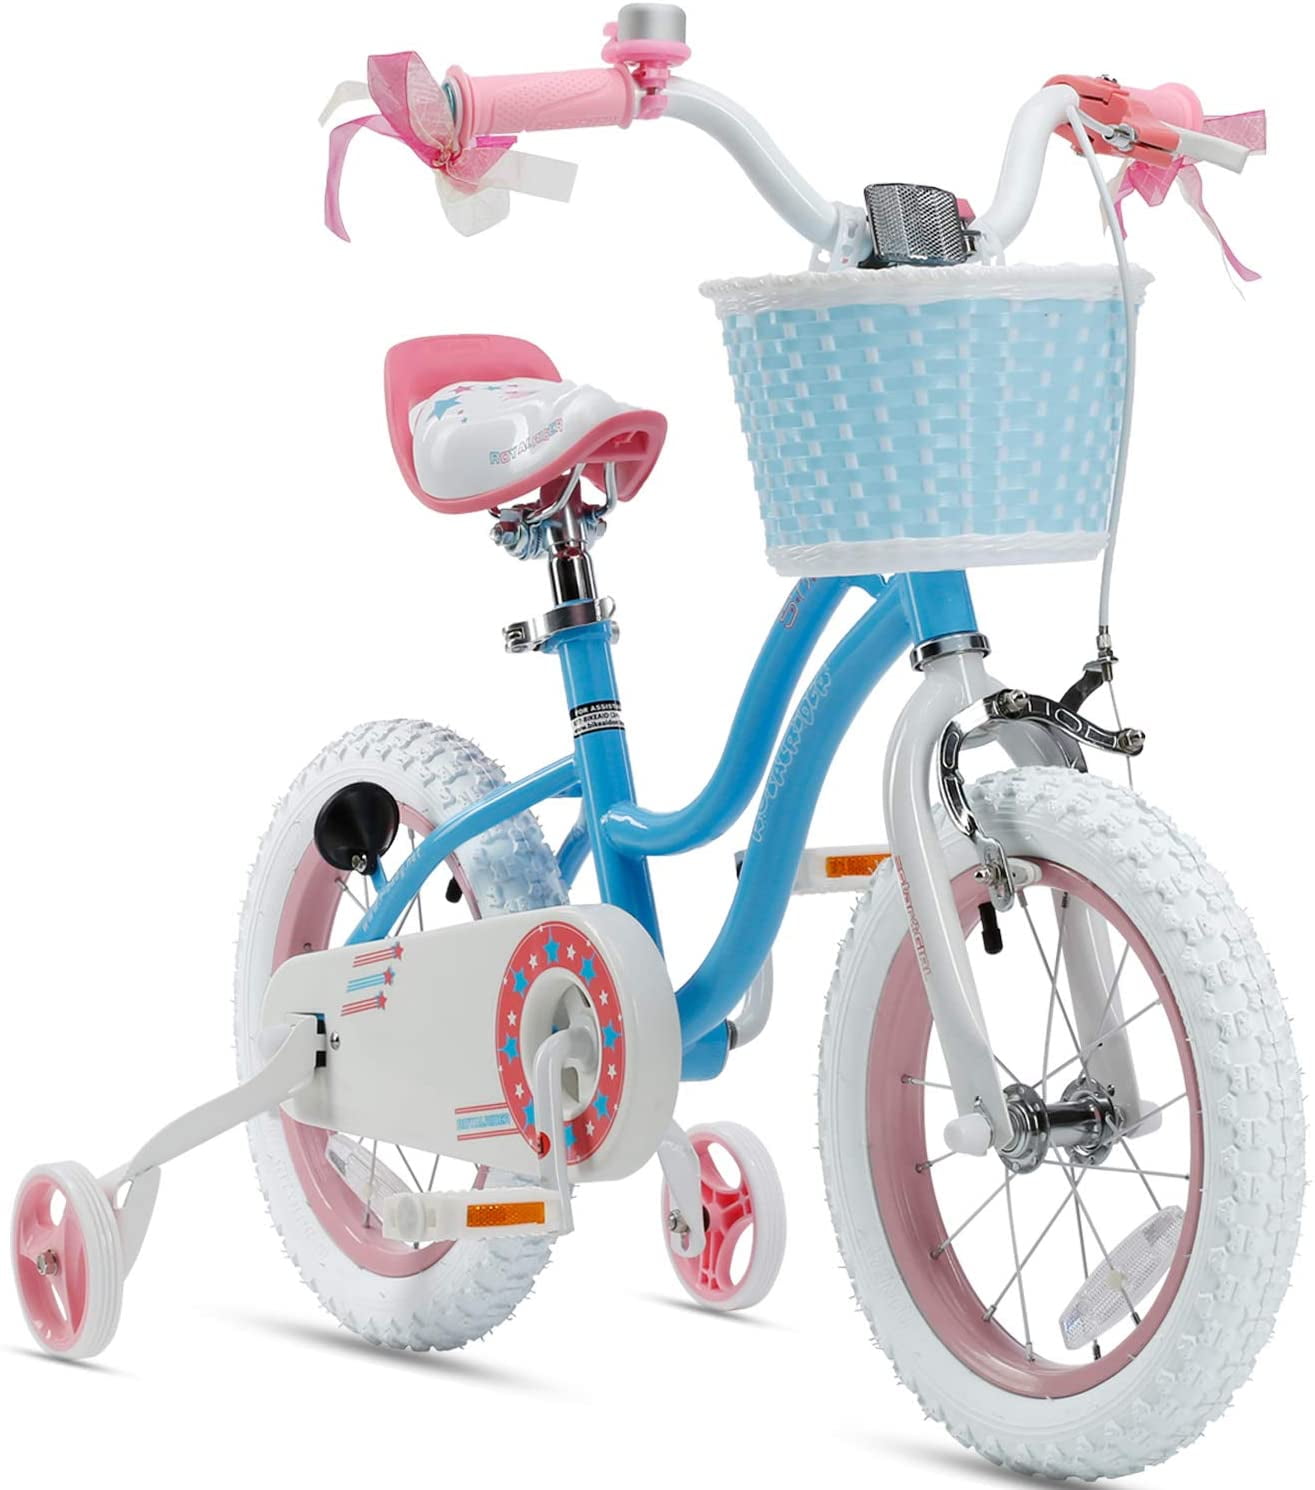 Trolls Girls Bike Purple Pink White 16 087876056218 for sale online